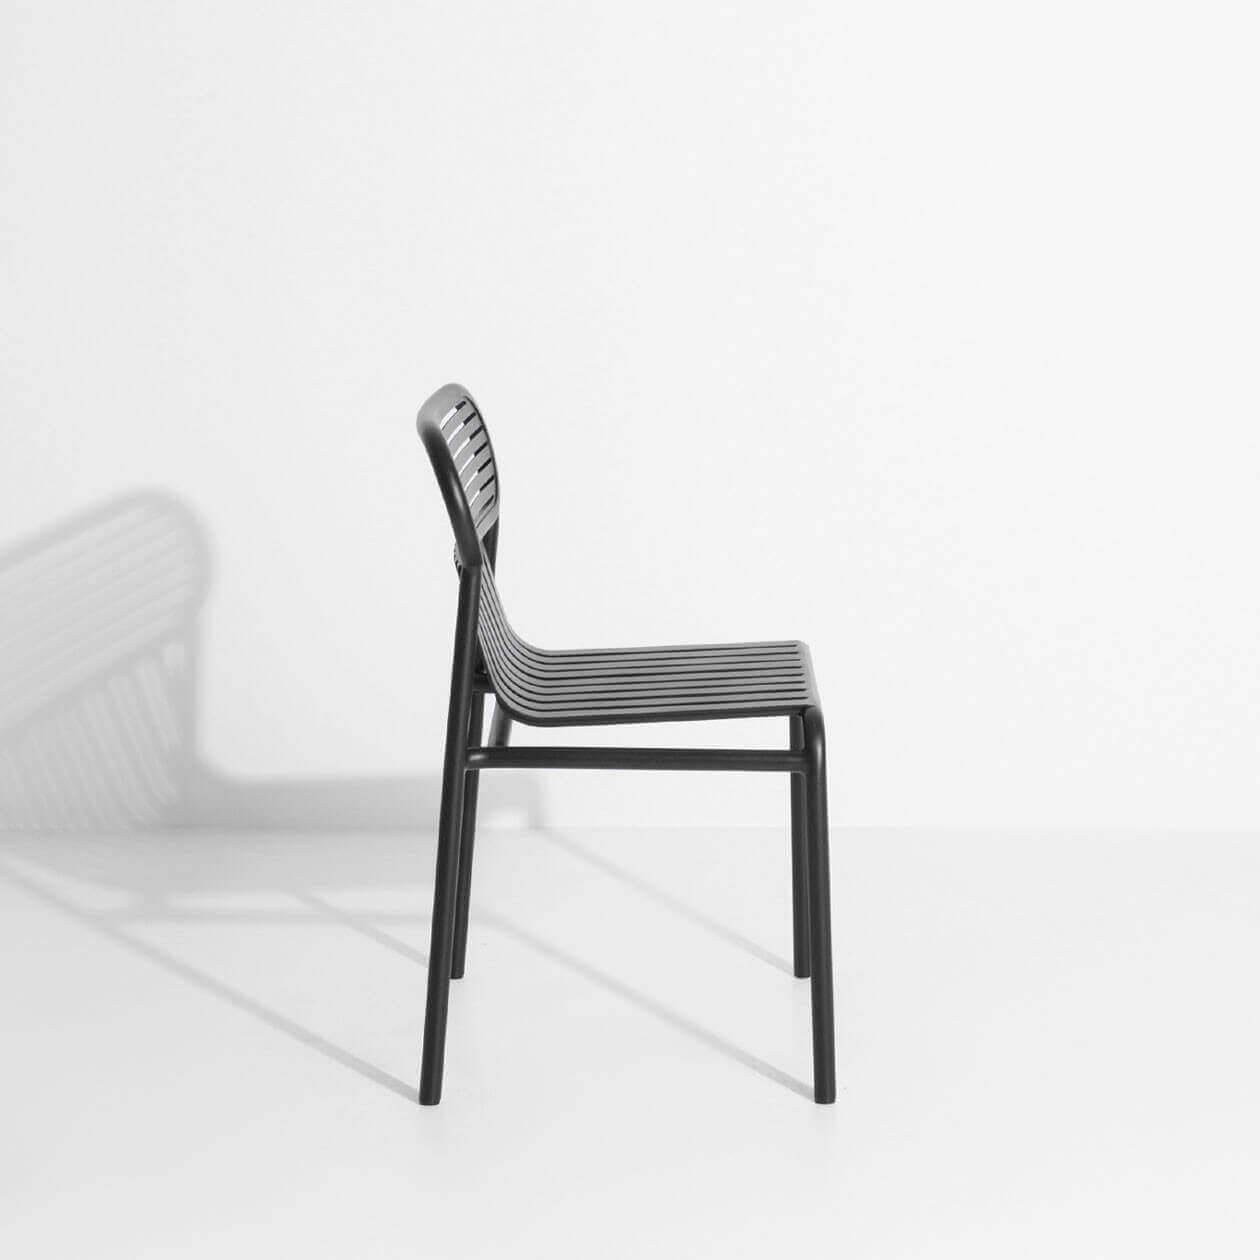 WEEK-END - Chair